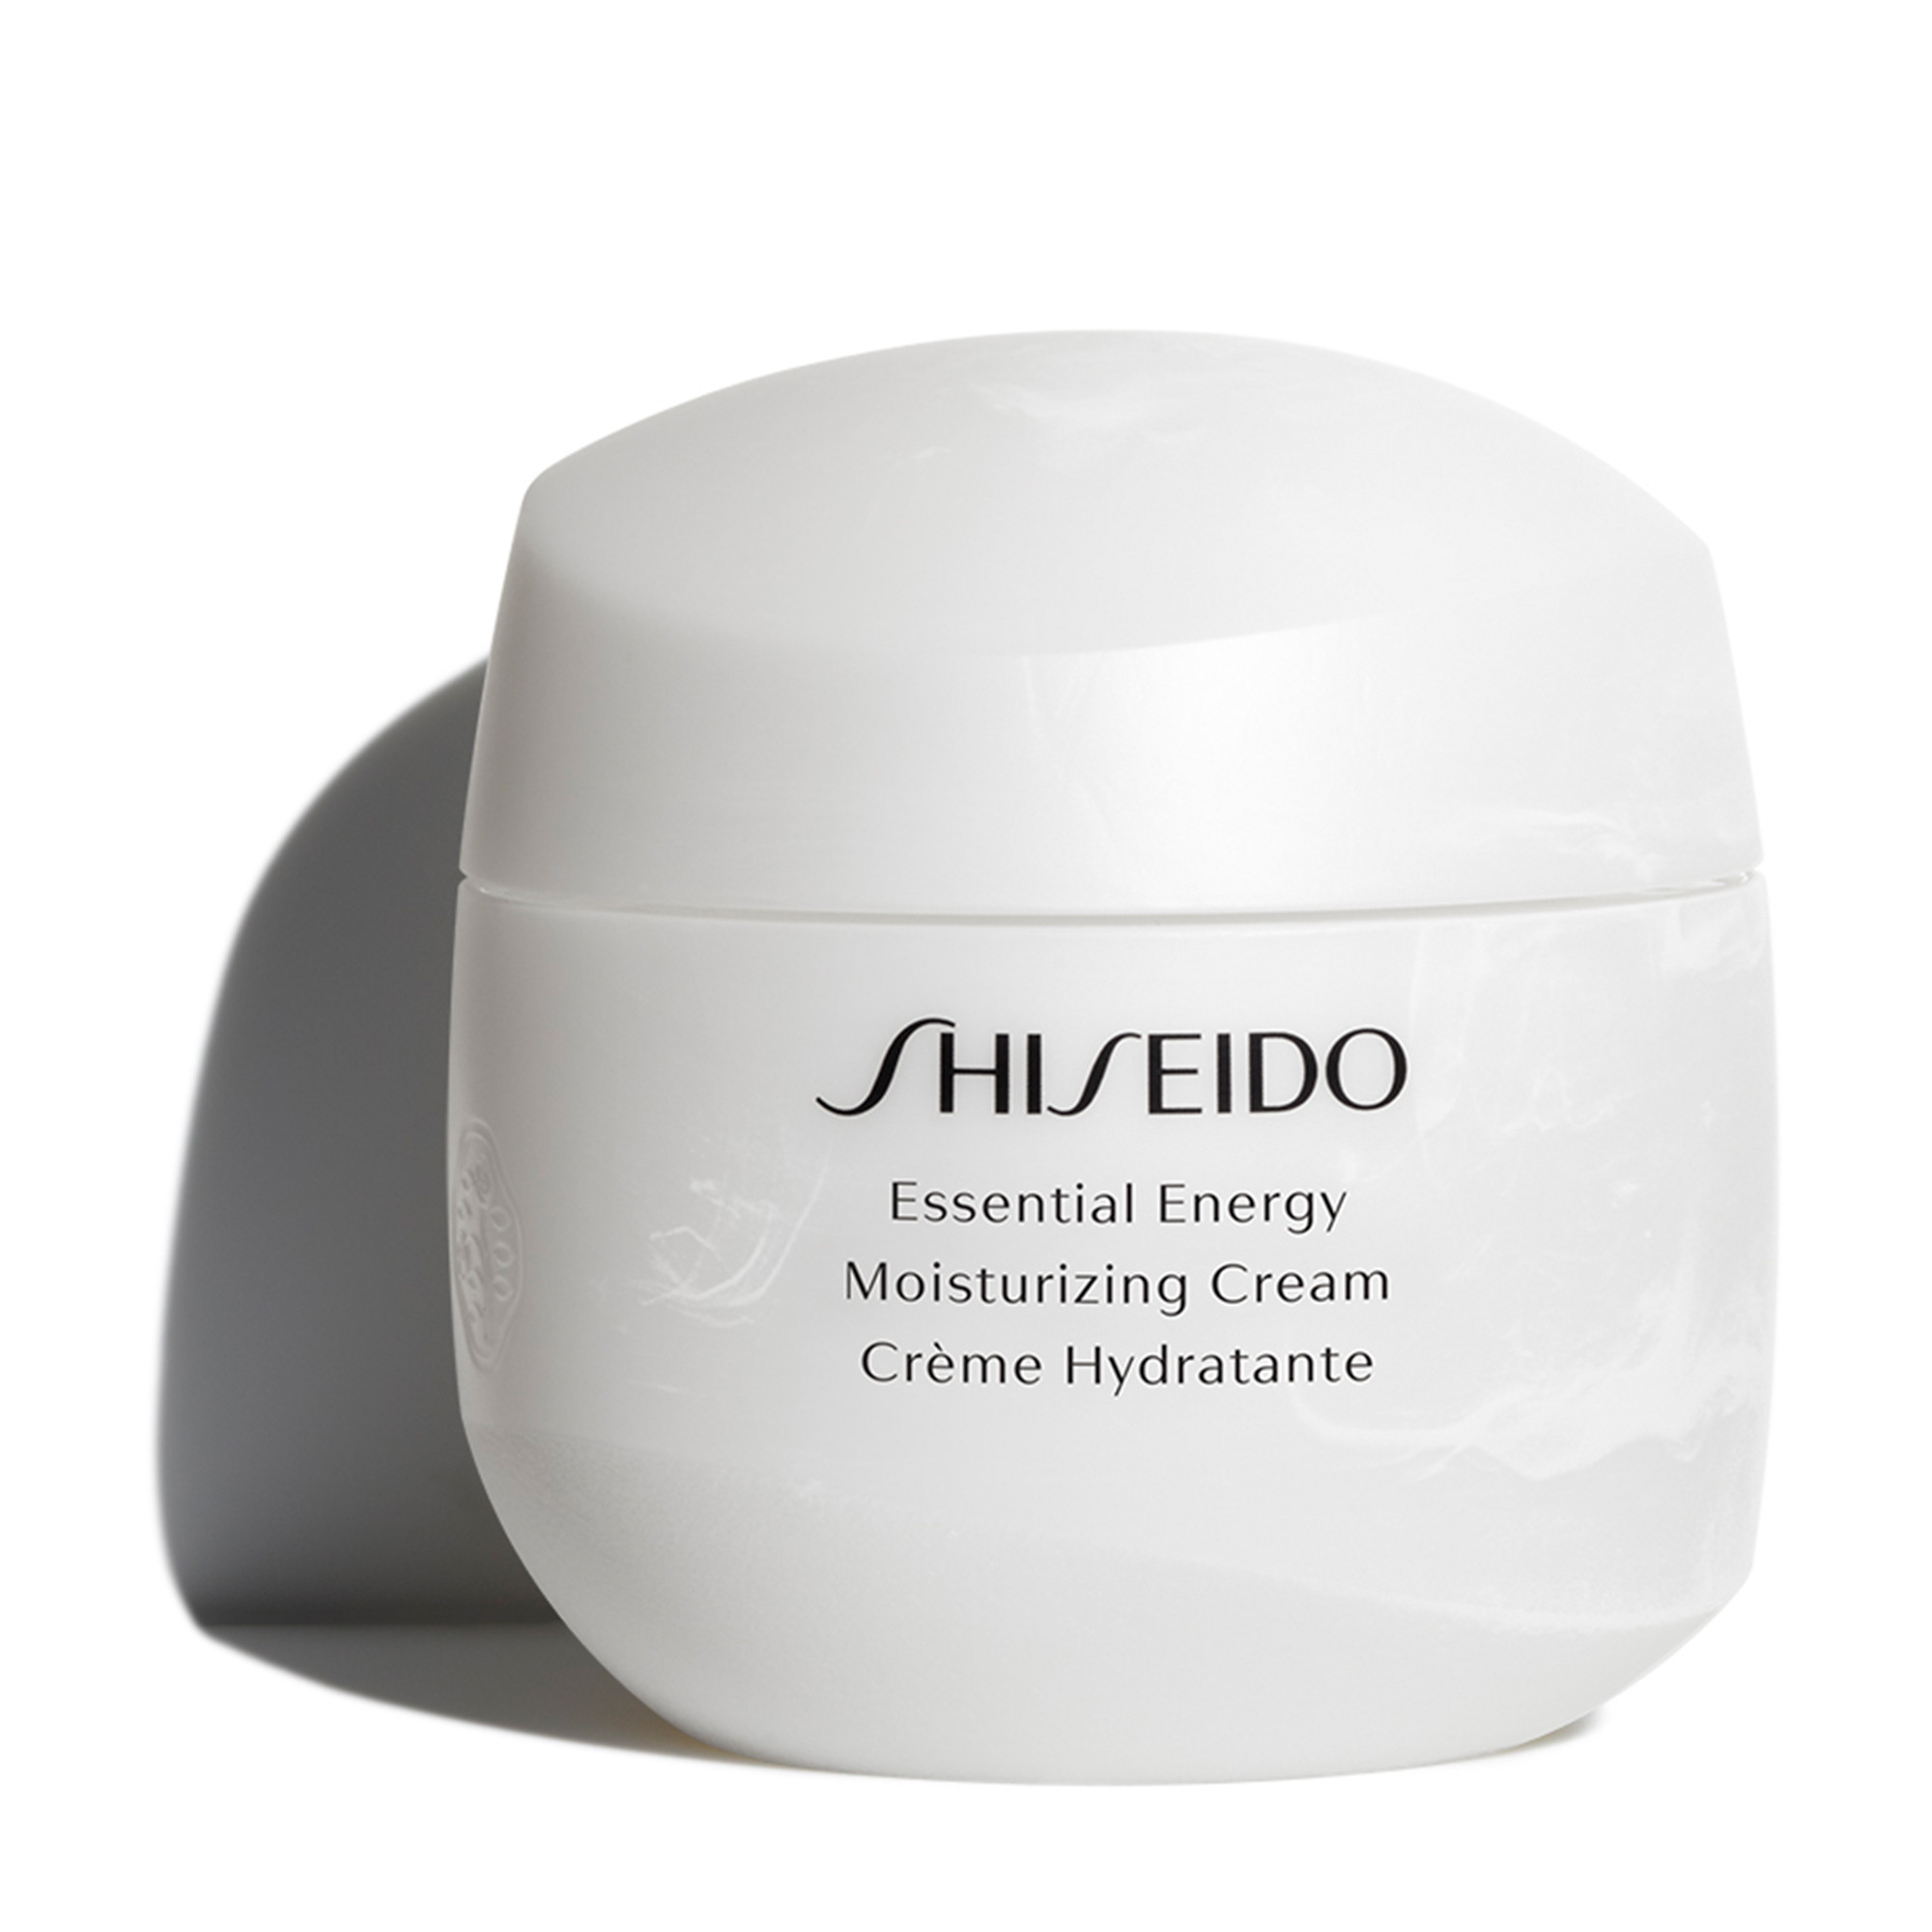 Shiseido essential. Шисейдо Энерджи крем. Шисейдо крем для лица Energy. Шисейдо Ессентиал Энерджи. Крем Эссеншиал Энерджи шисейдо.